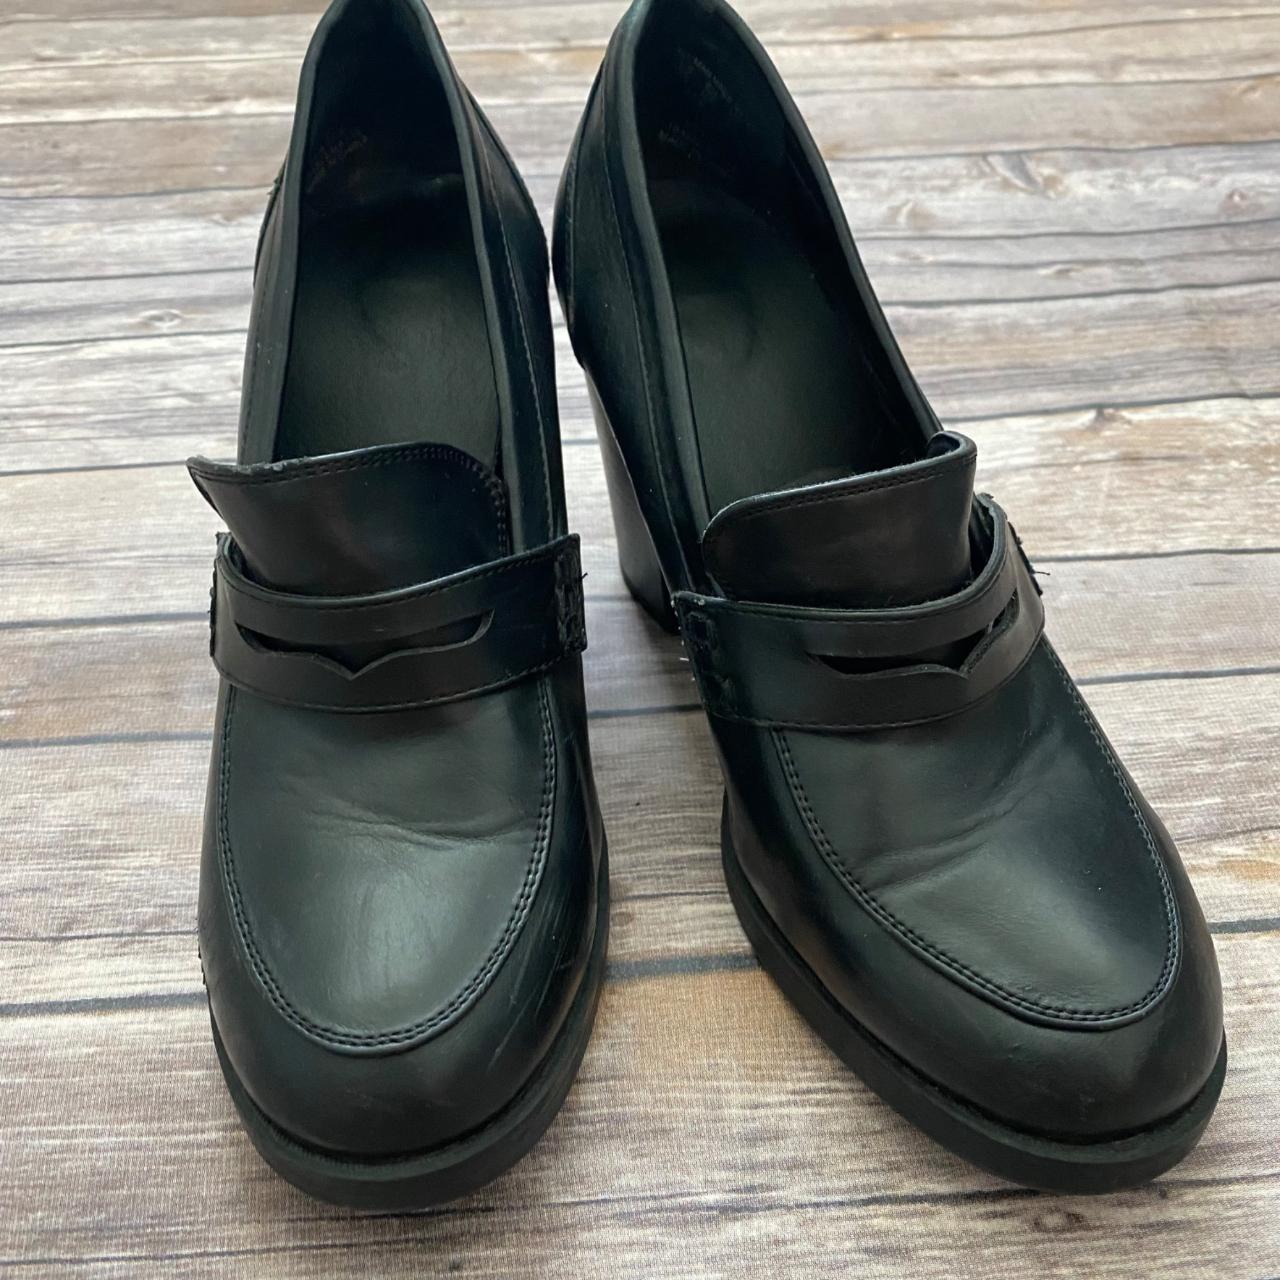 Bongo Black Loafer High Heel Camper Shoes Size... - Depop